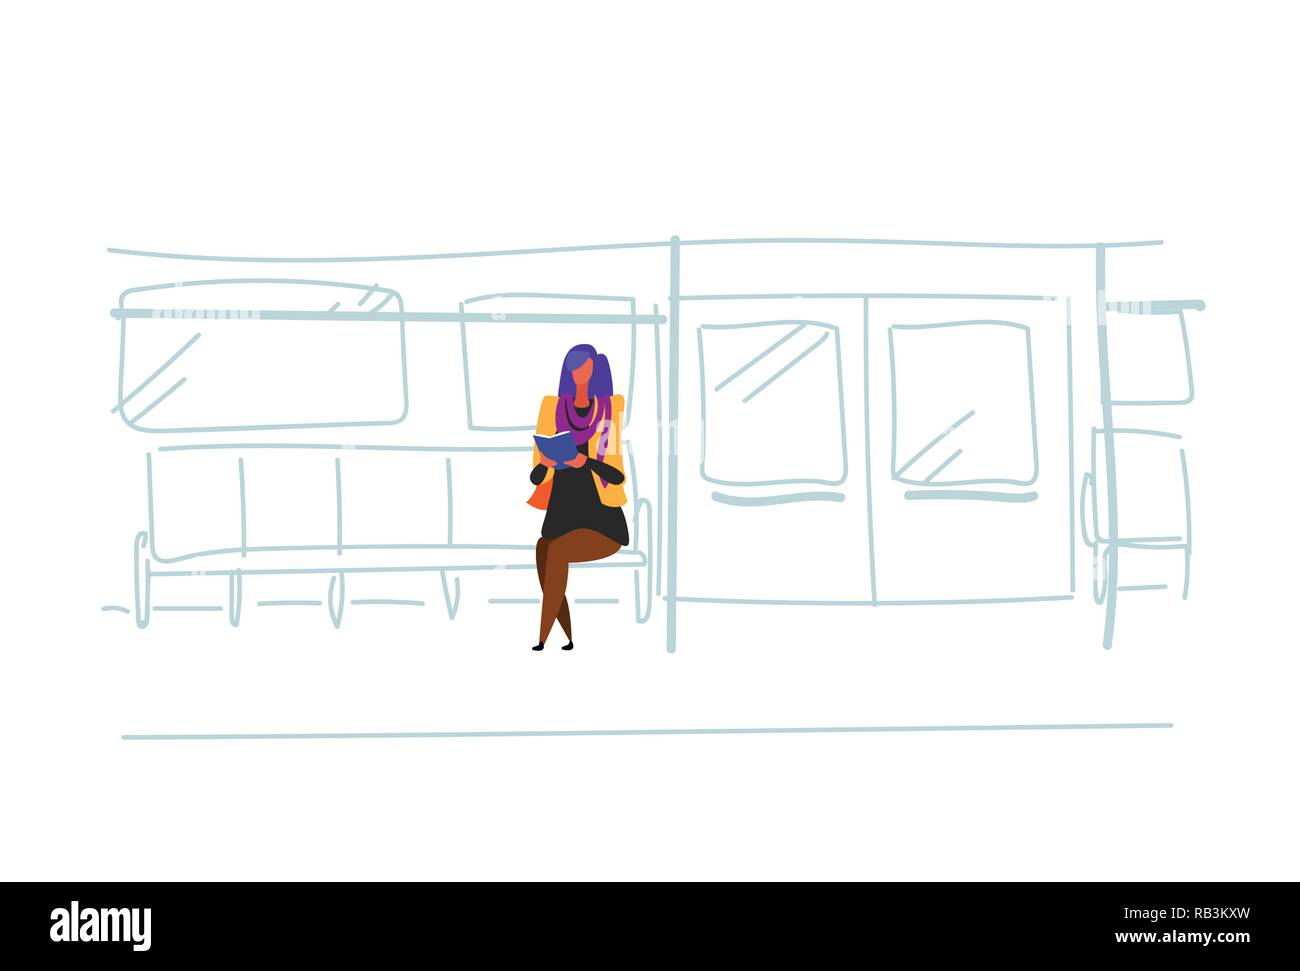 Informelle Besucherin u-bahn Passagiere sitzen u-bahn Buch Interior View Public Underground City Transport Konzept weibliche Comicfigur Skizze doodle horizontale Lesung Stock Vektor